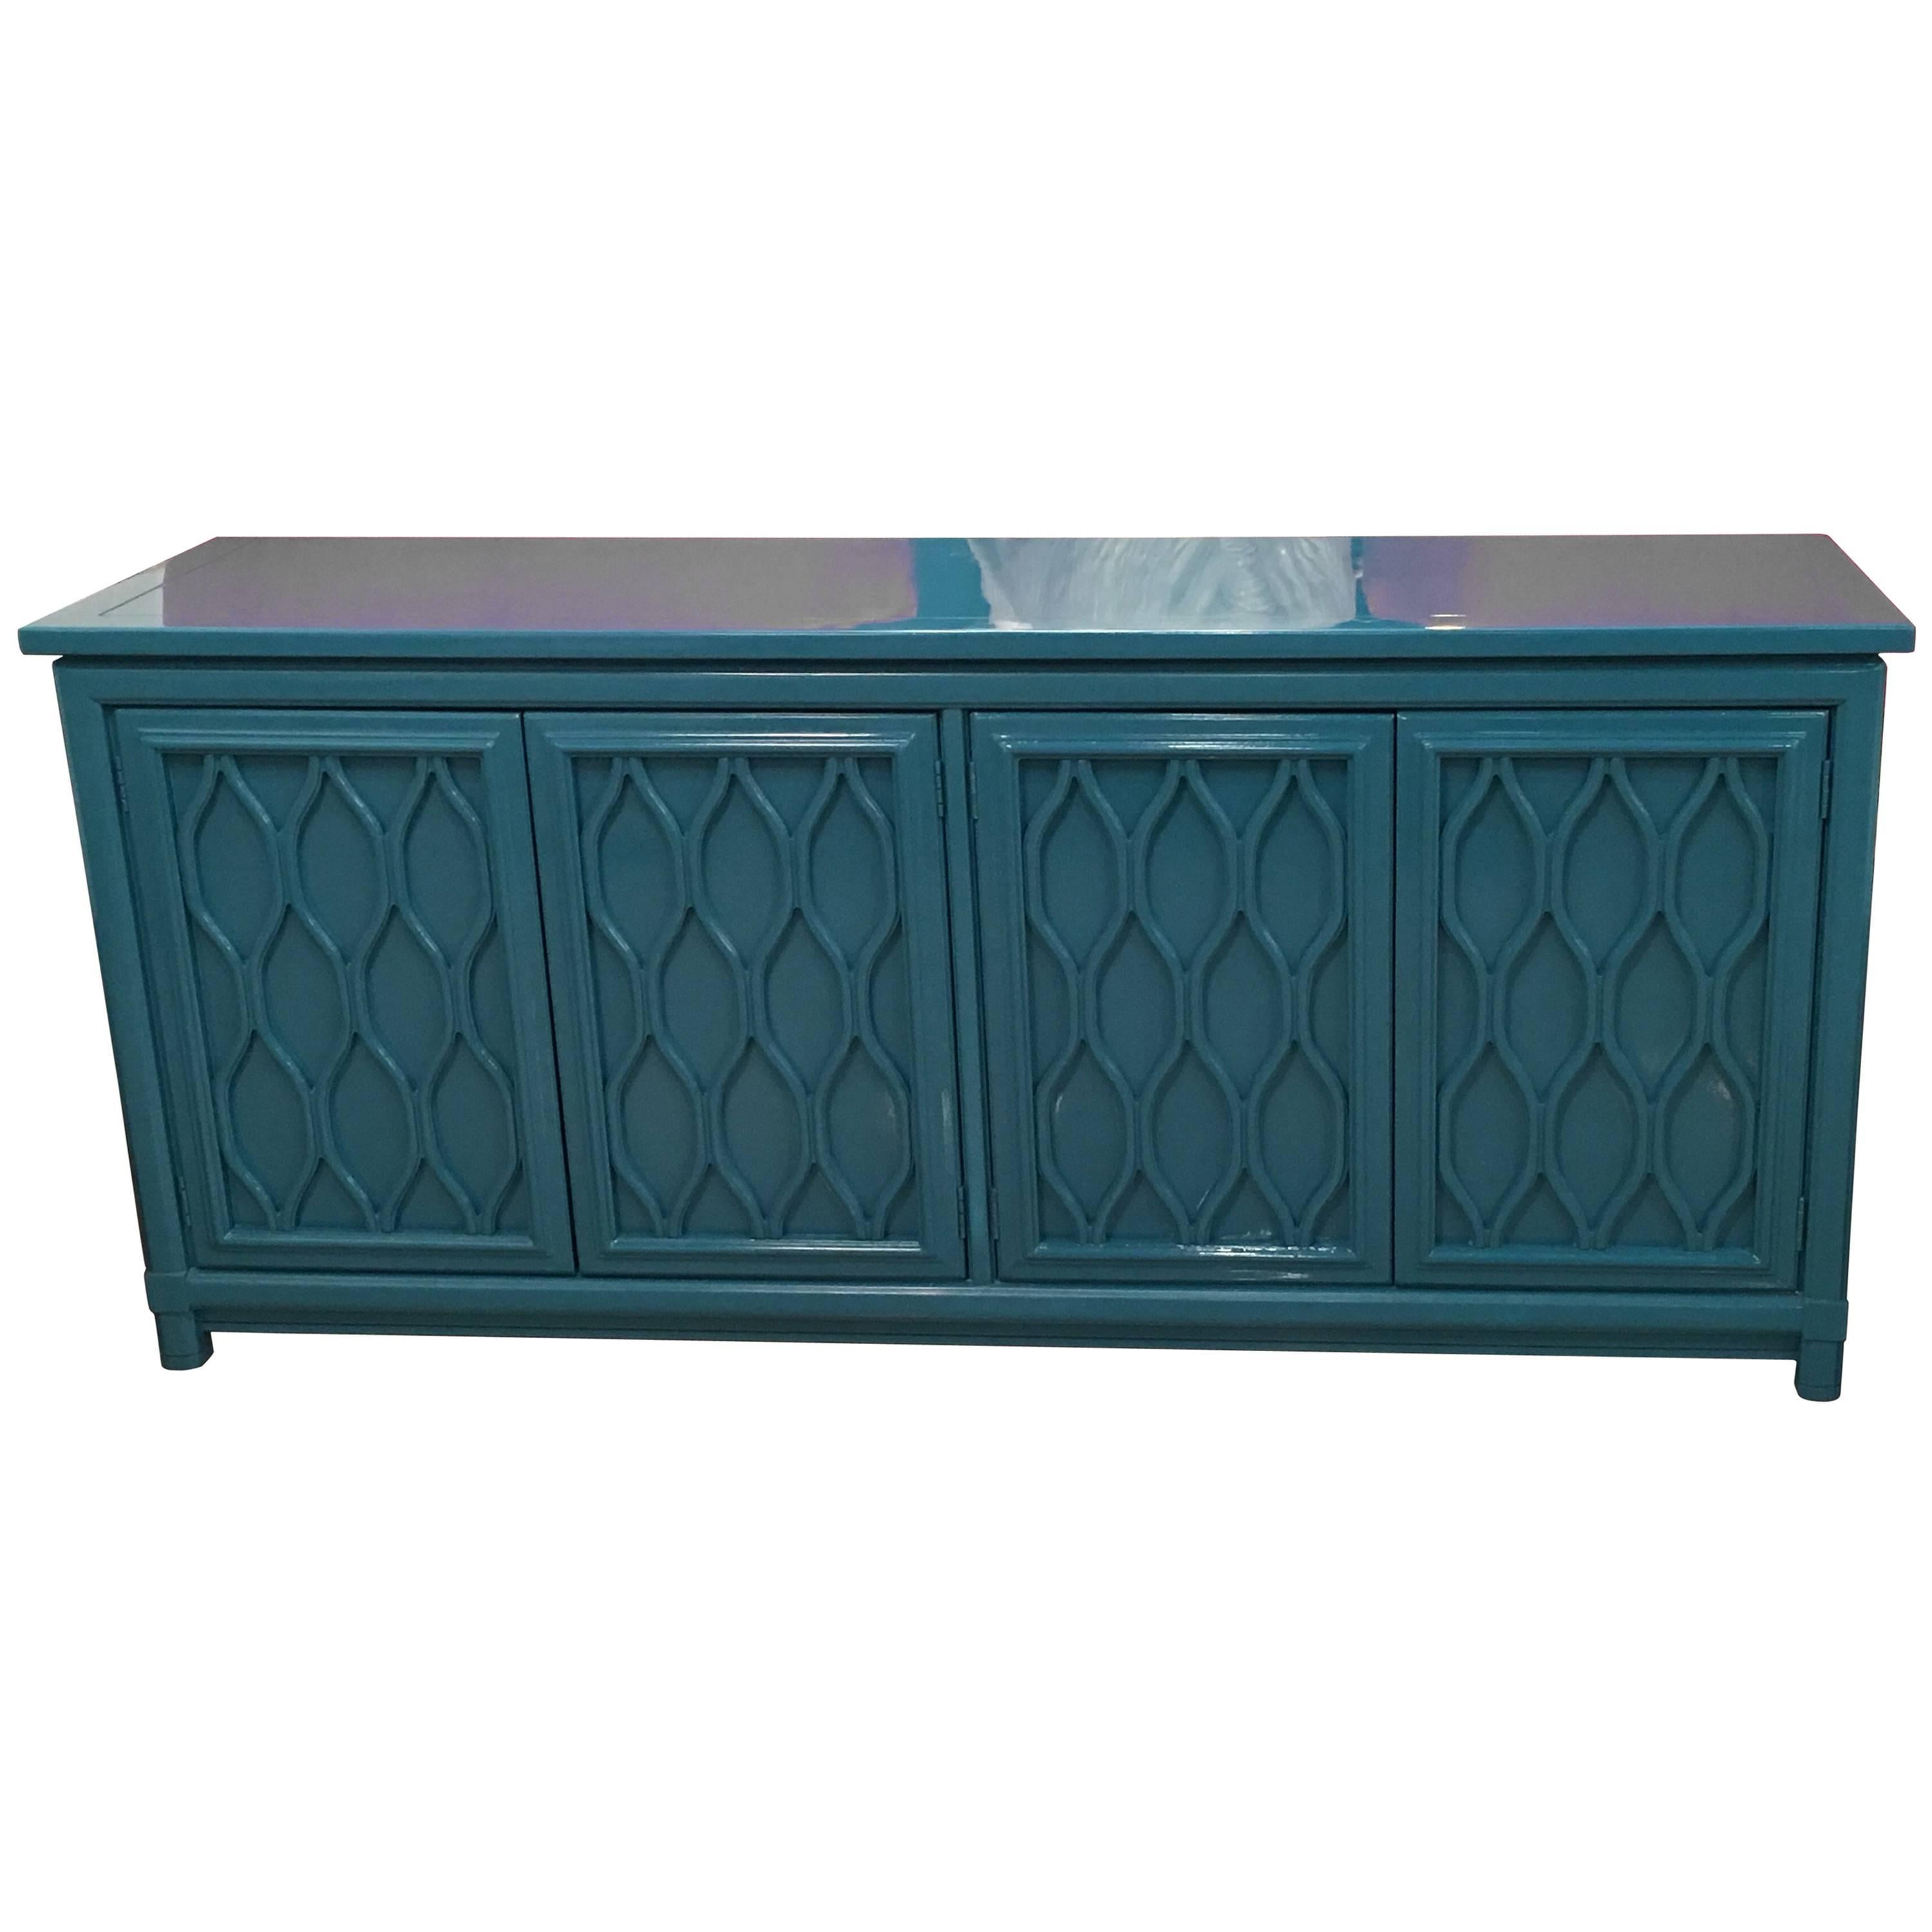 Lacquered Credenza Buffet Sideboard Blue Teal Dresser Hollywood Regency Vintage 